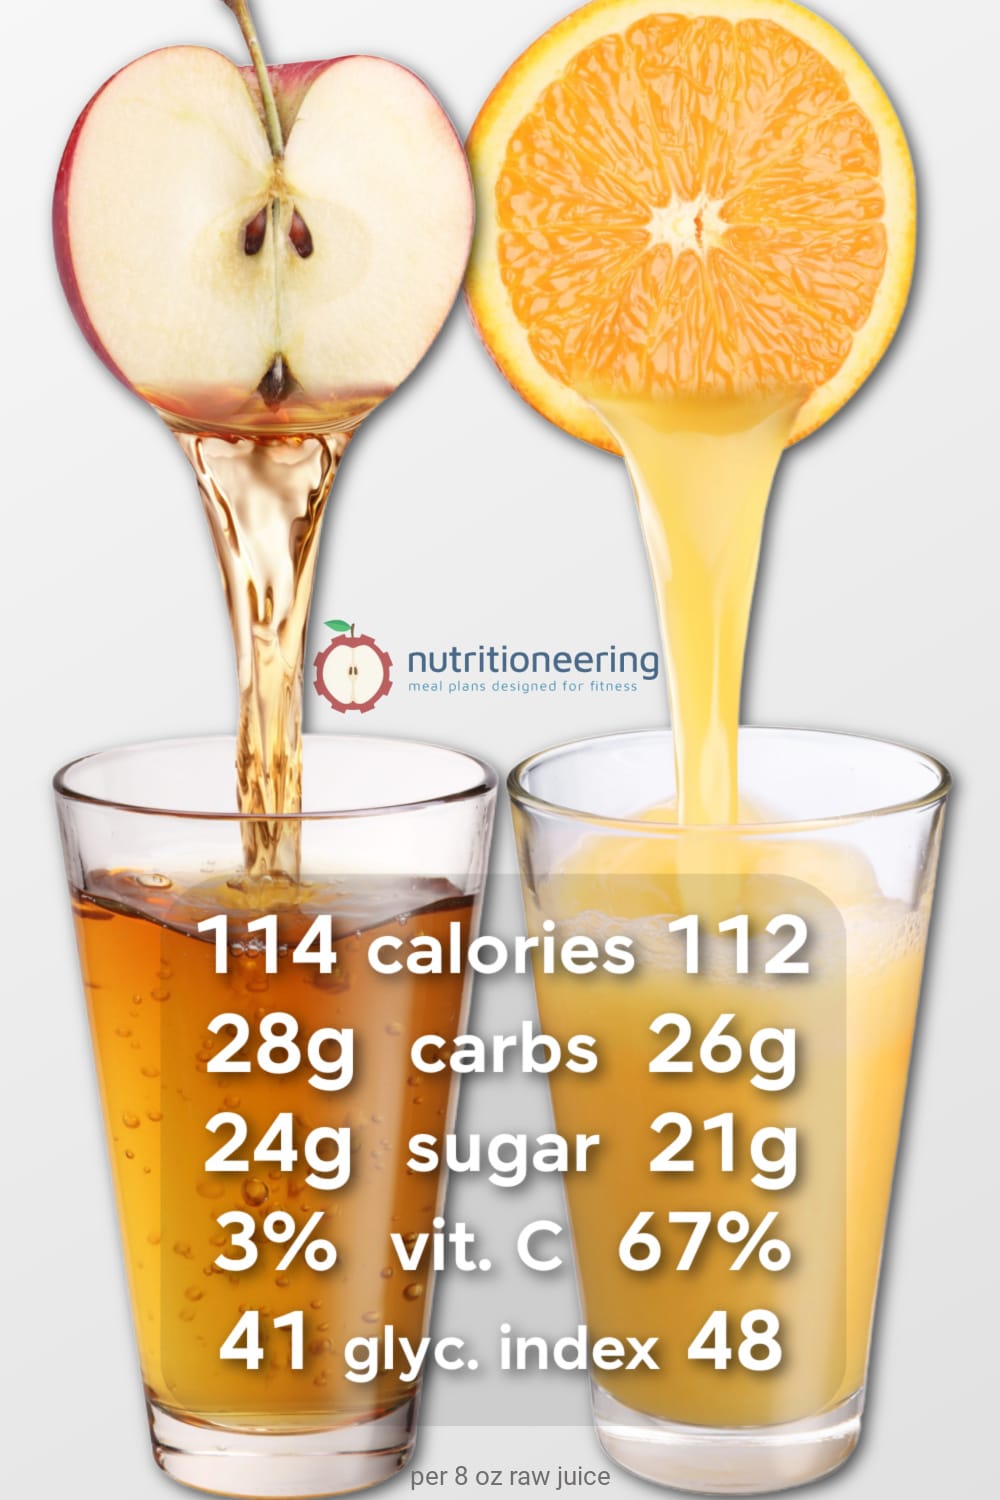 Apple Juice vs Orange Juice Nutrition Facts